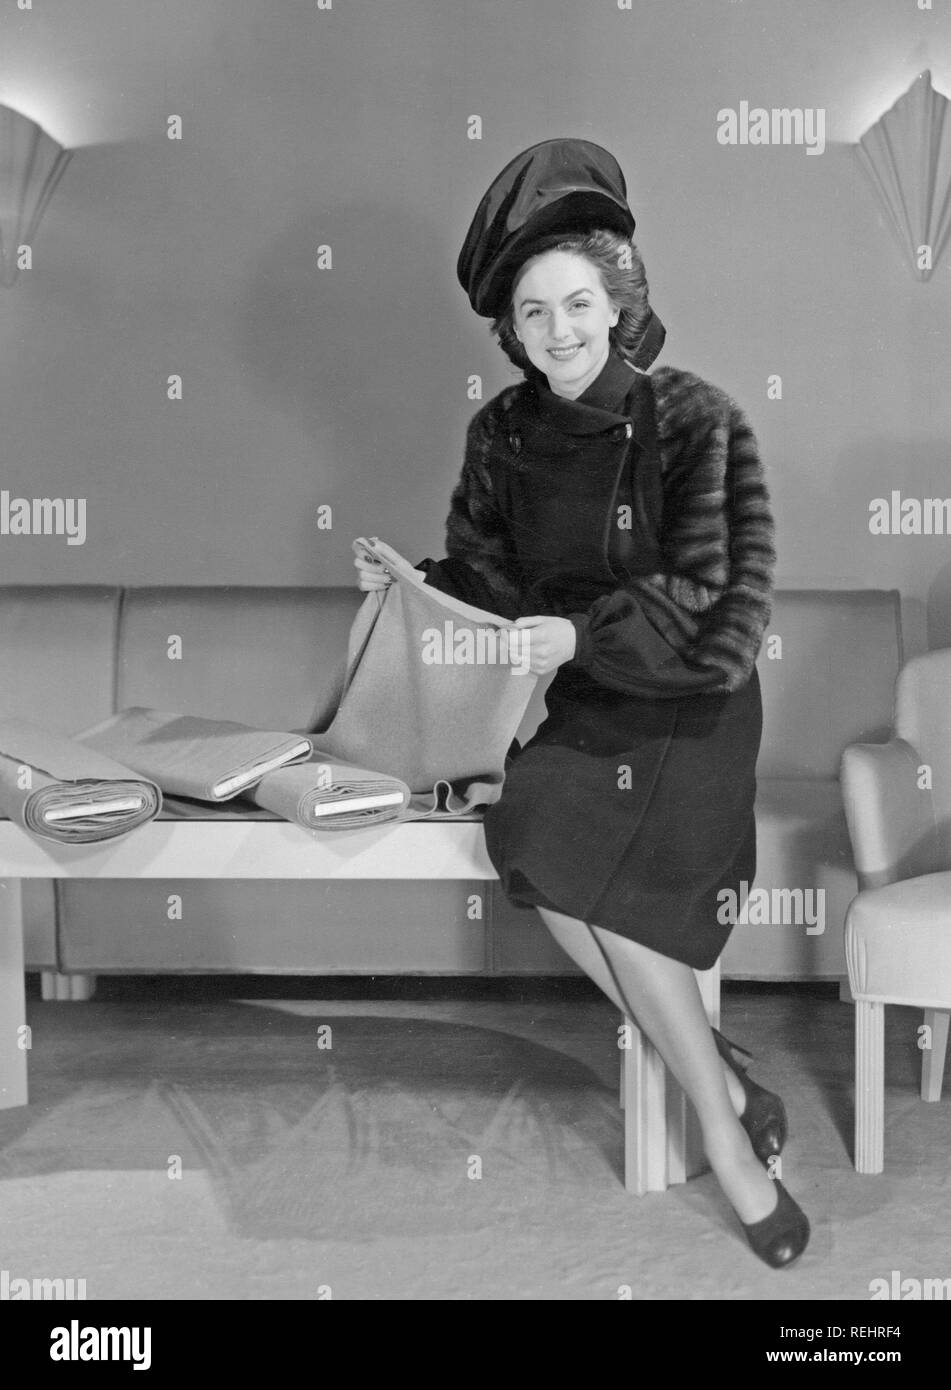 La mode féminine dans les années 40. Une jeune femme en costume typique des années  40.